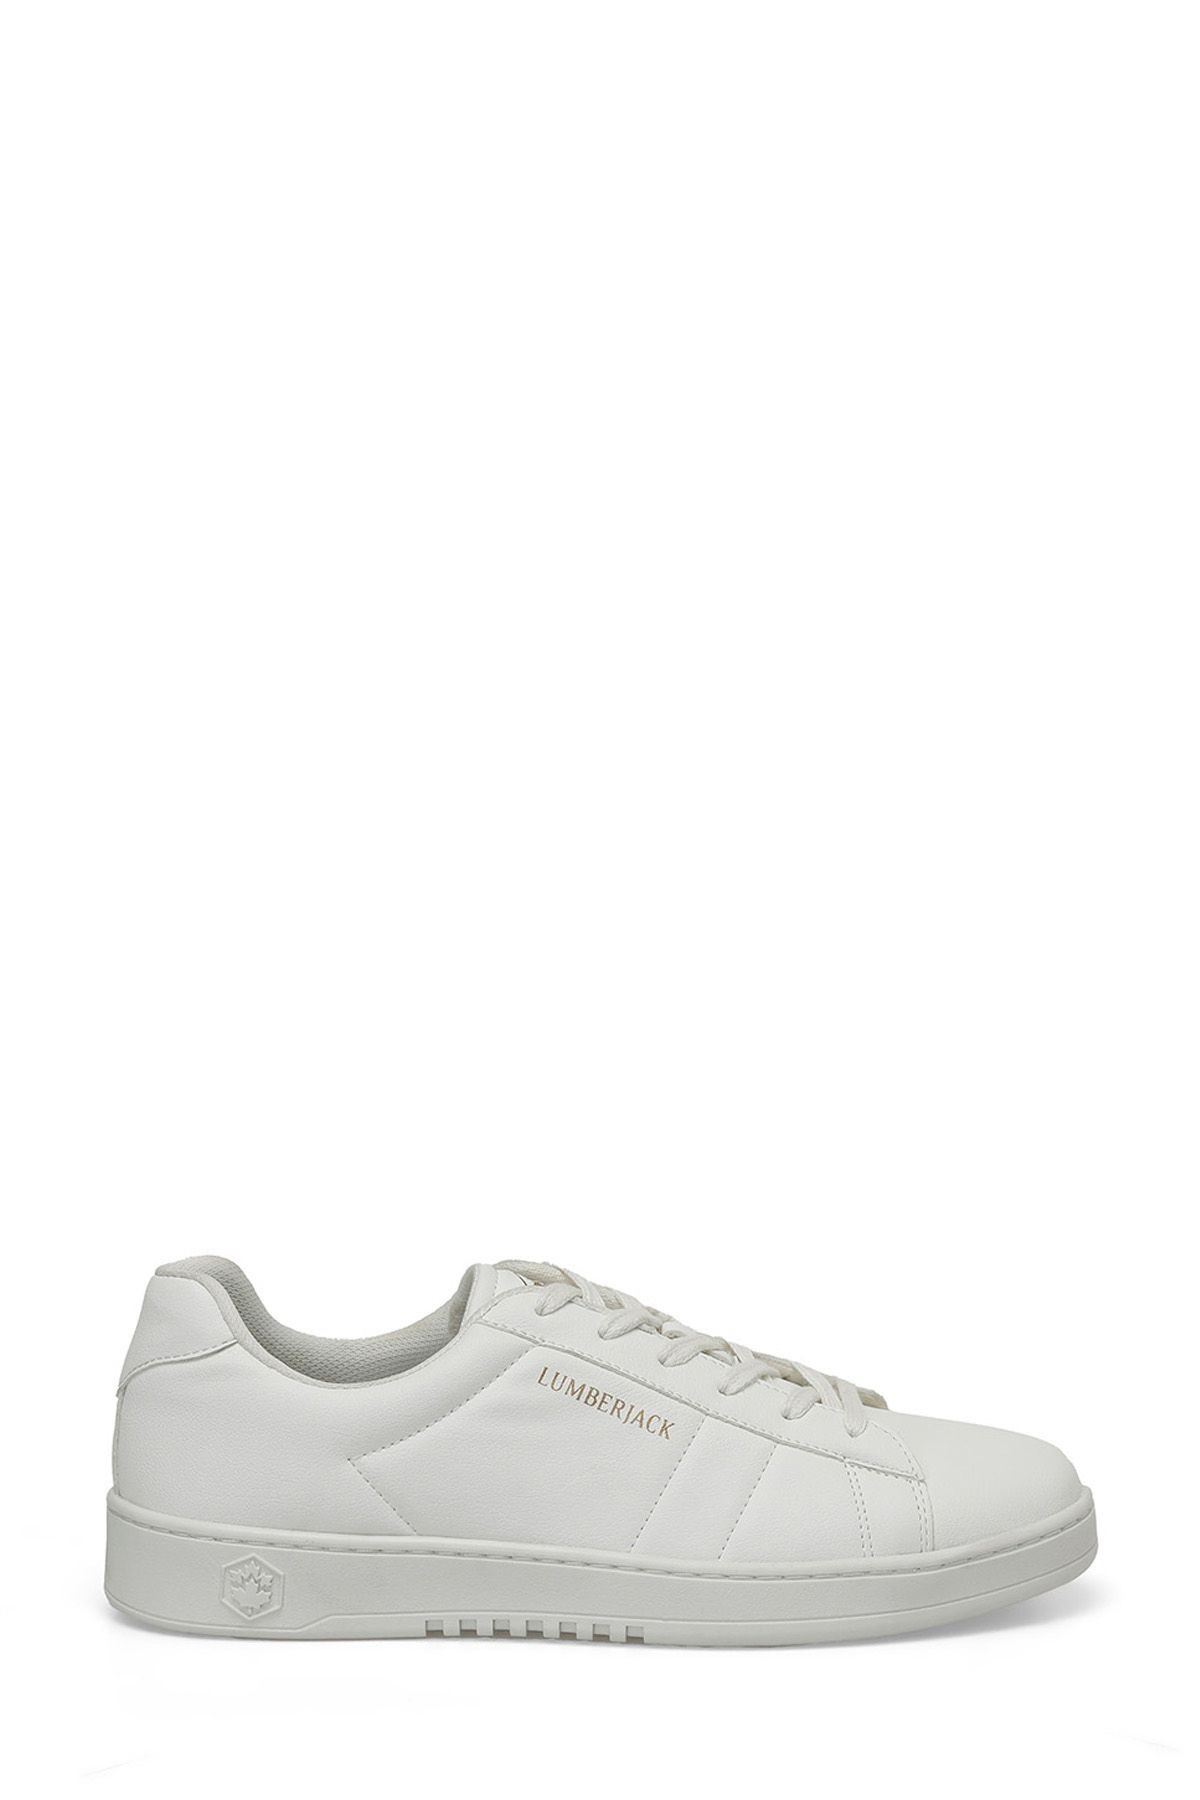 Valery 4Fx Lumberjack Erkek Beyaz Spor Ayakkabı - 101511836